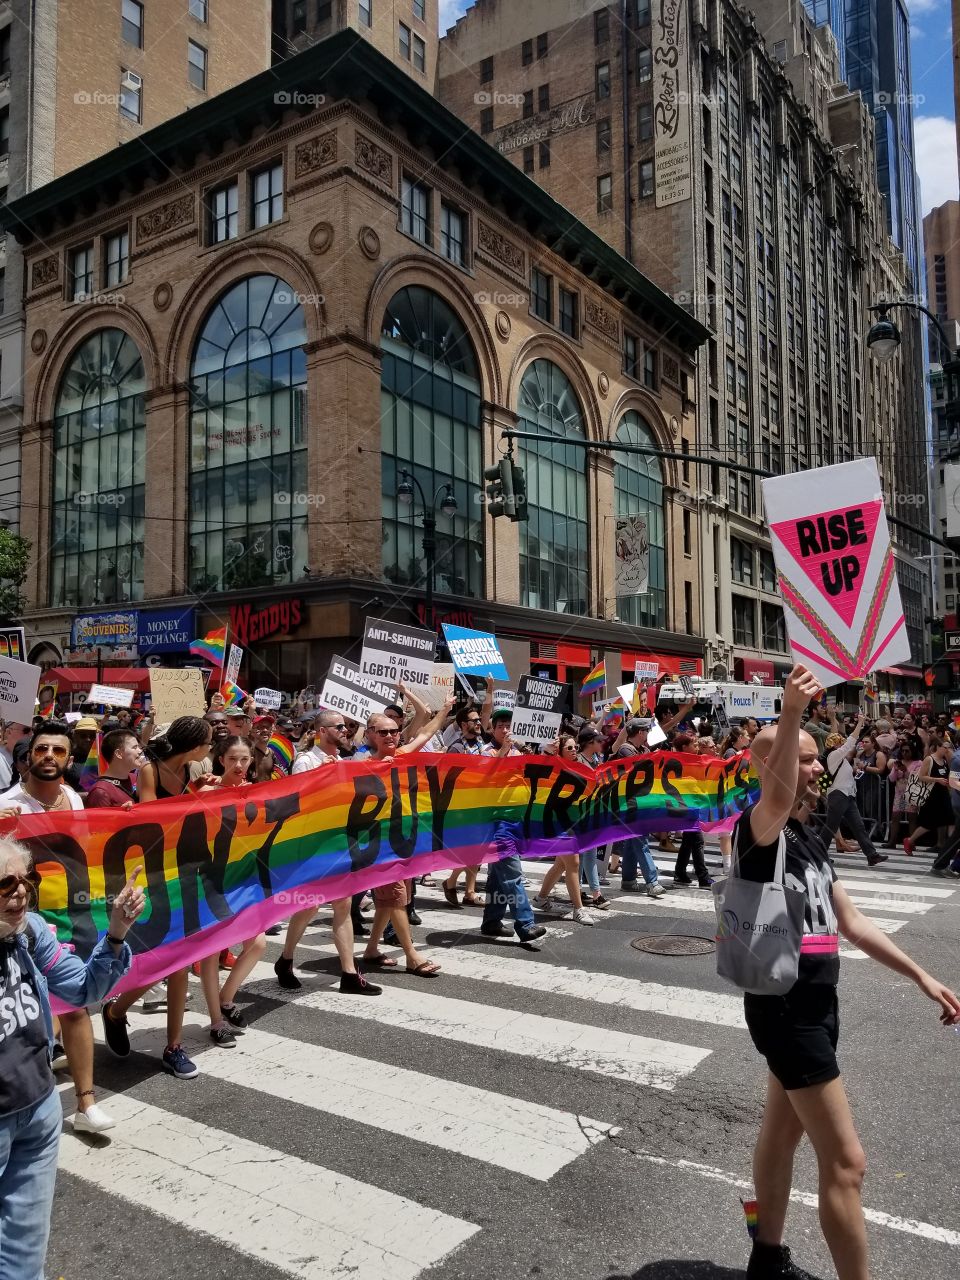 NYC Pride 2017 
"don't buy trump's lies"